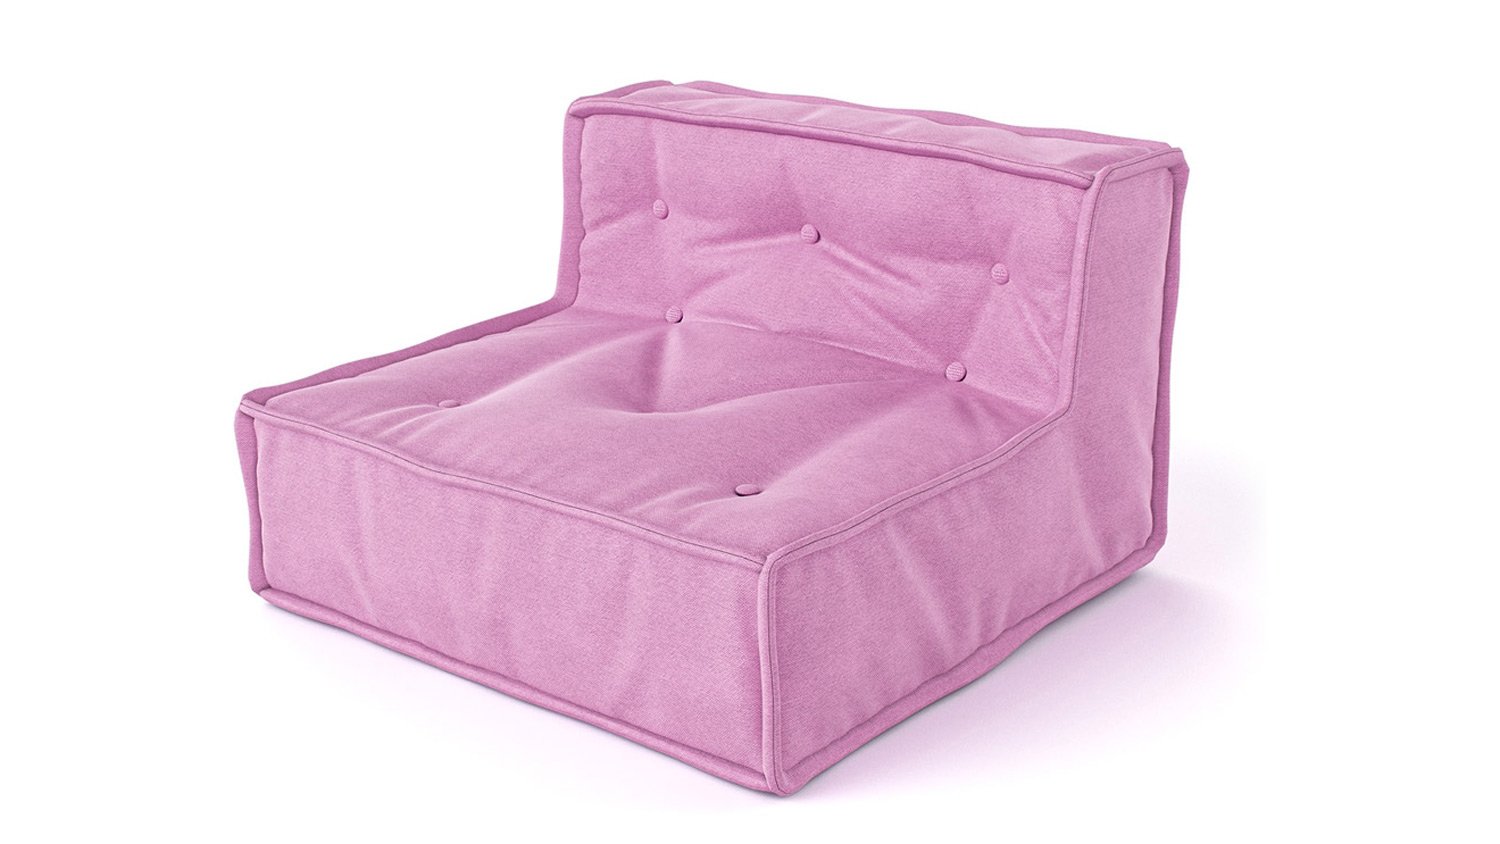 Środkowy element sofy dziecięcej MyColorCube w kolorze różowy